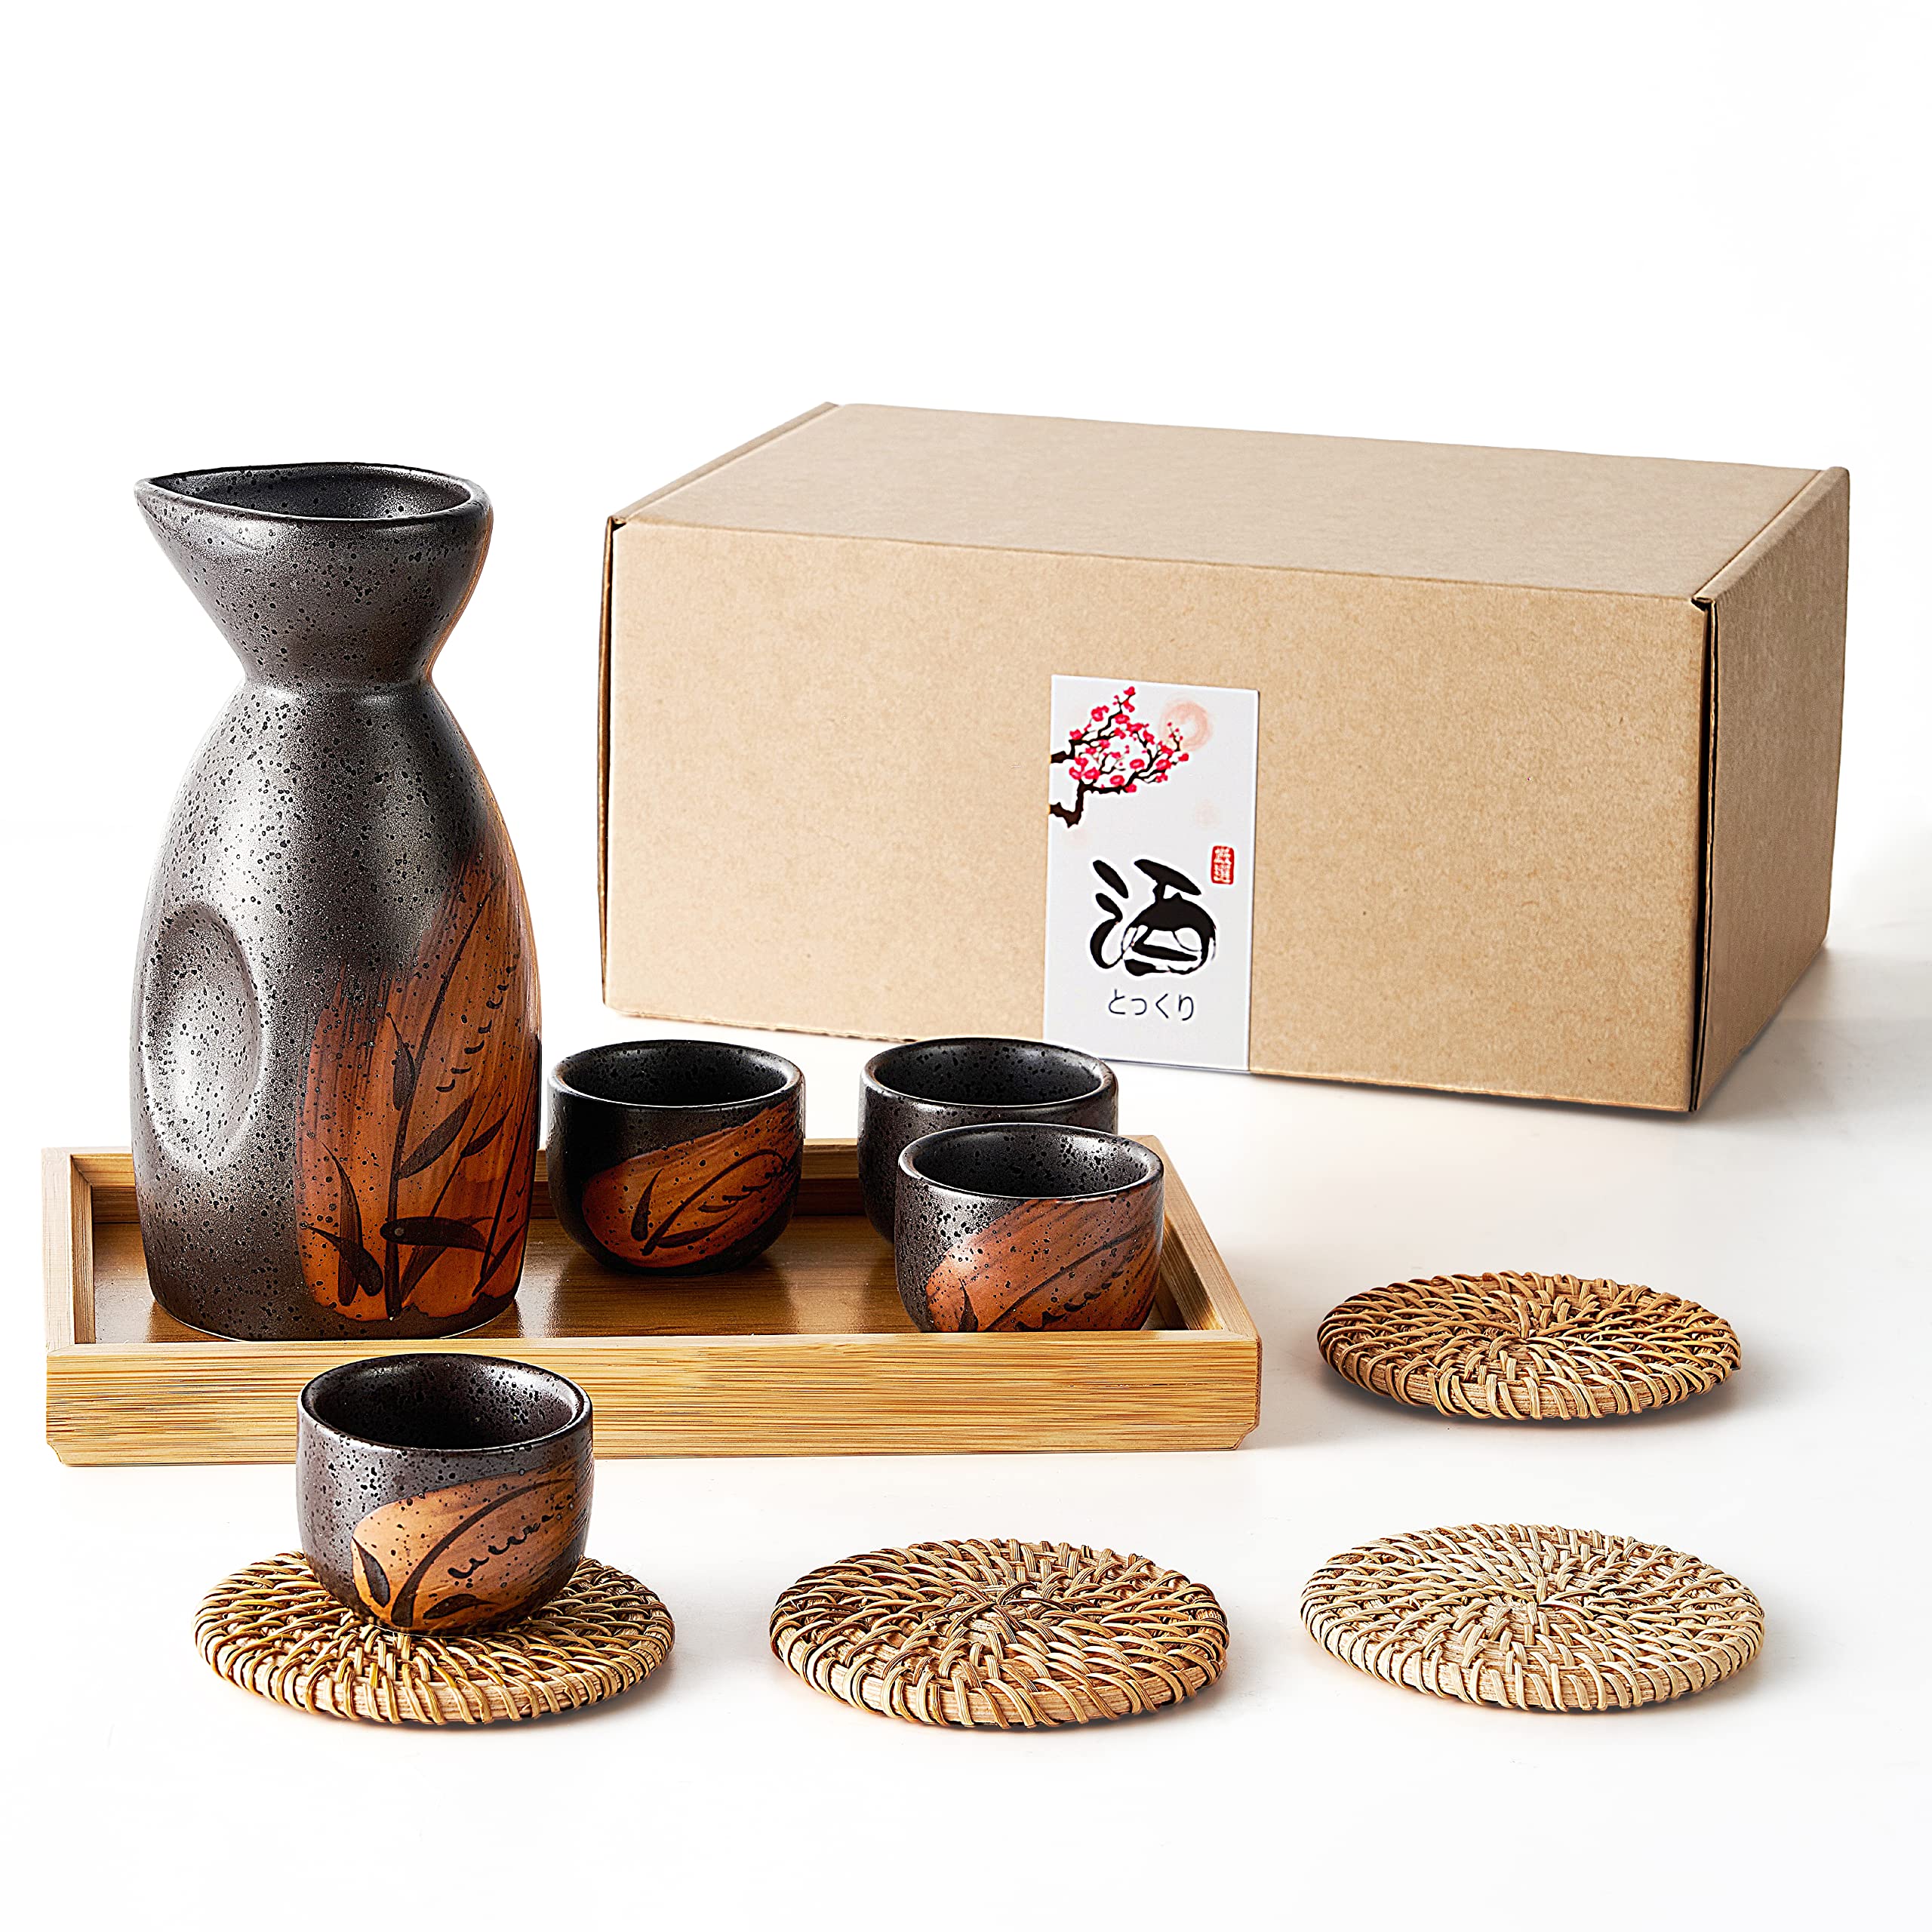 RECEESOON 10 Piece Traditional Japanese Sake Set with Tray, Korean Soju Glass, Black Sake Cups, Saki Cup Set, Japanese Gifts Set